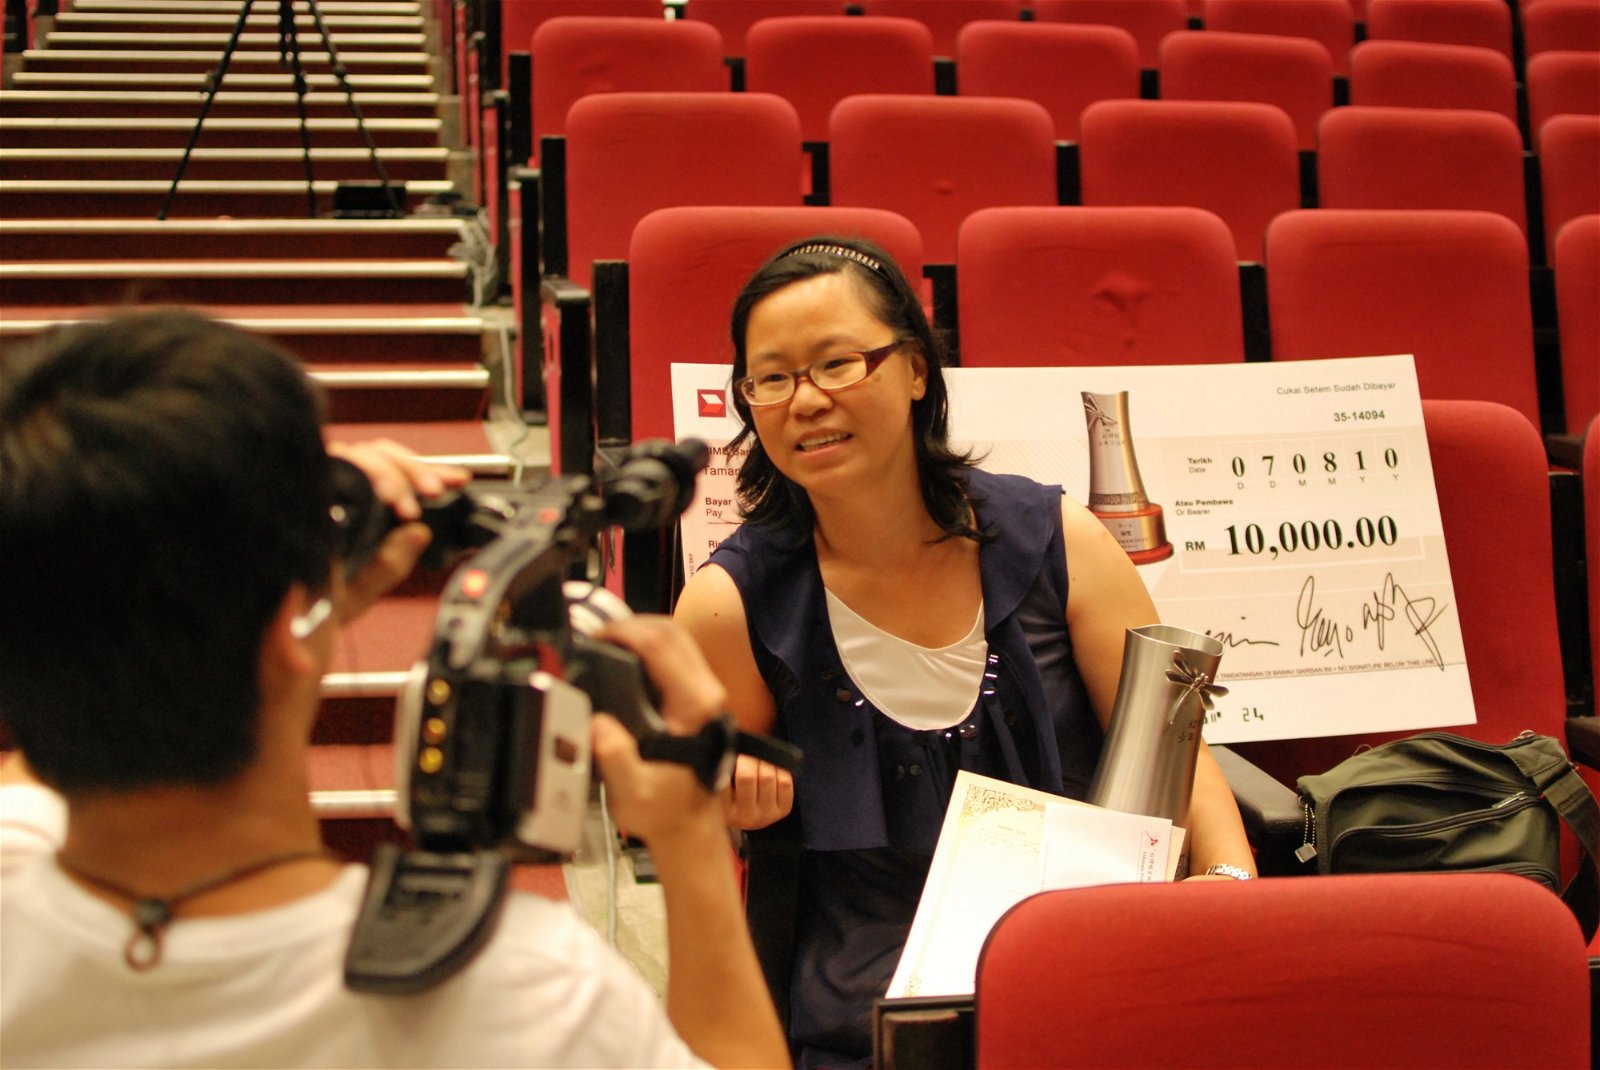 2010年，李慧慧以《妈妈满分》长篇小说夺得第一届“红蜻蜓少年小说奖”银奖，由此展开她的创作路。